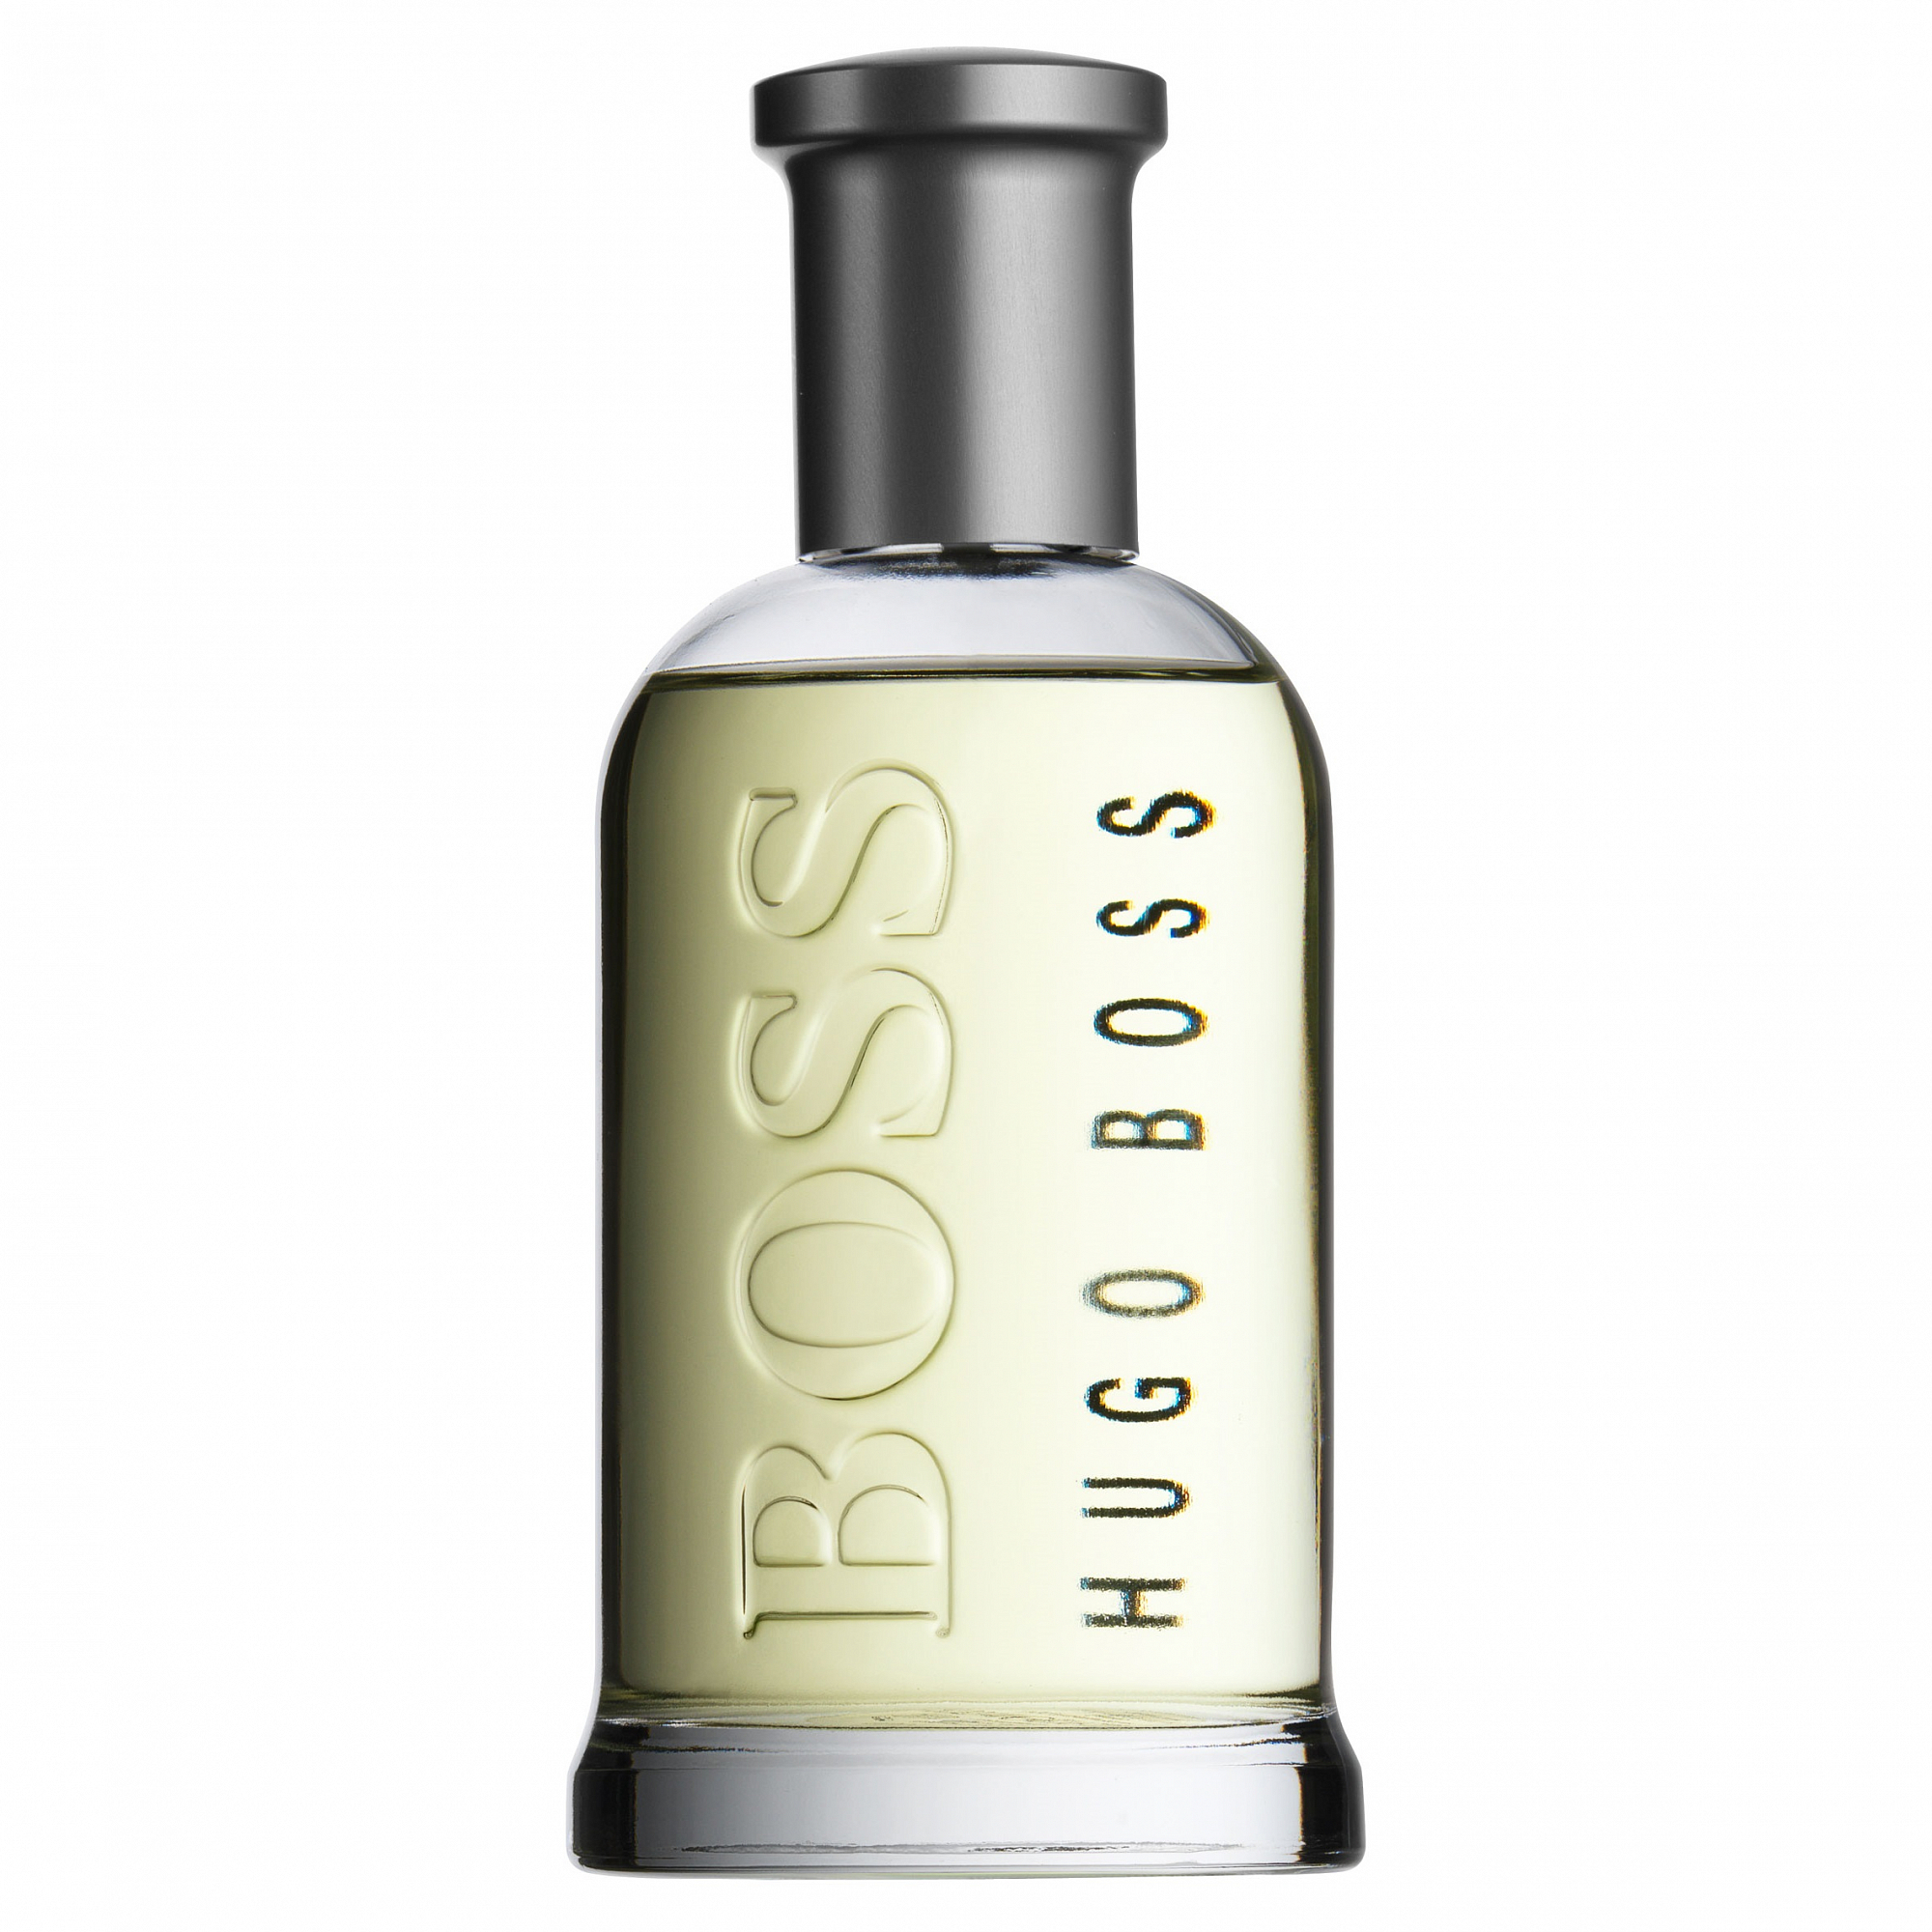 Летуаль босс мужские. Hugo Boss Bottled Eau de Toilette. Hugo Boss Boss 6, EDT., 100 ml. Hugo Boss Boss Bottled. Hugo Boss Boss Bottled №6.